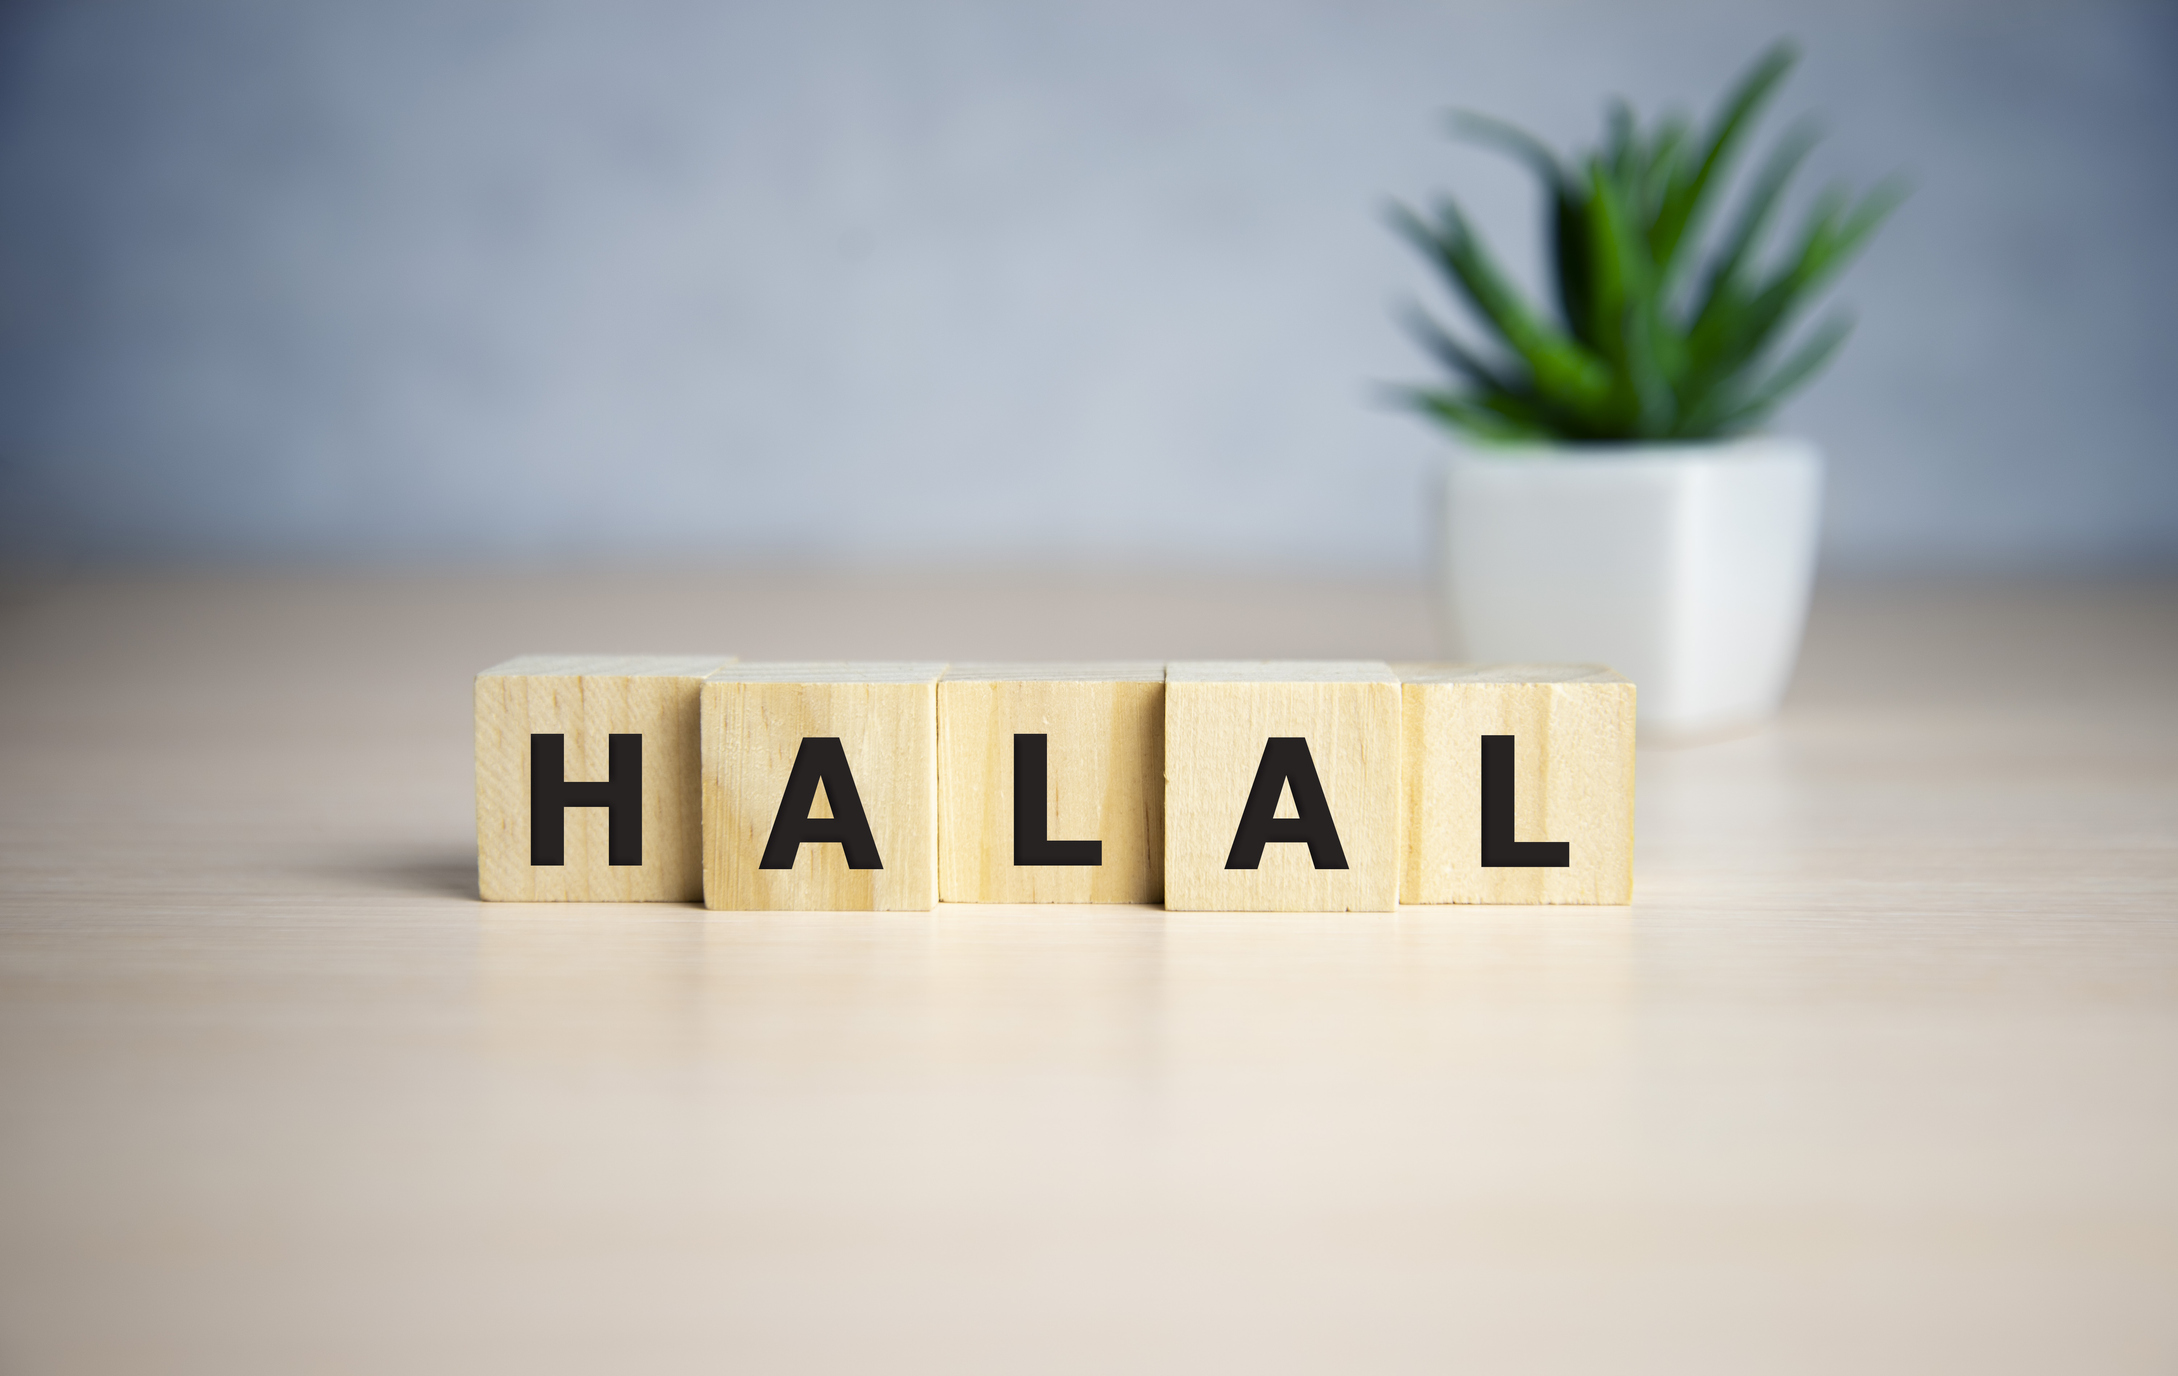 Letter block in word halal on wooden blocks.